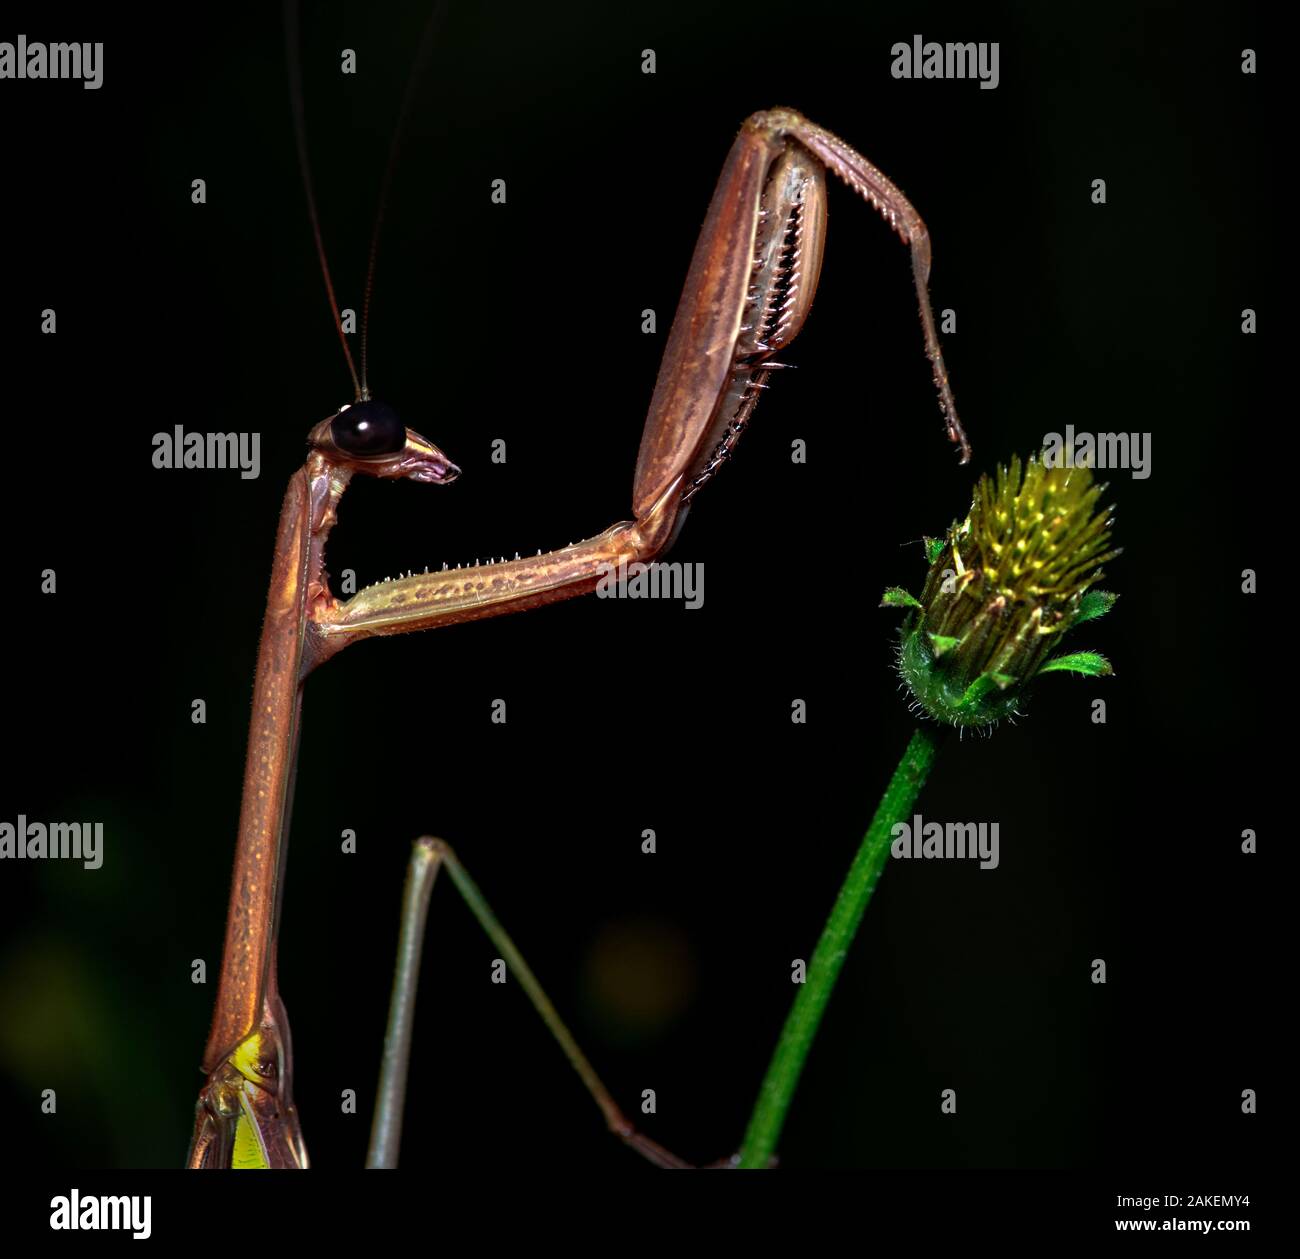 Praying mantis (Tenodera sp) on plant at night. Wuliangshan Nature Reserve, Jingdong, Yunnan Province, China. Stock Photo